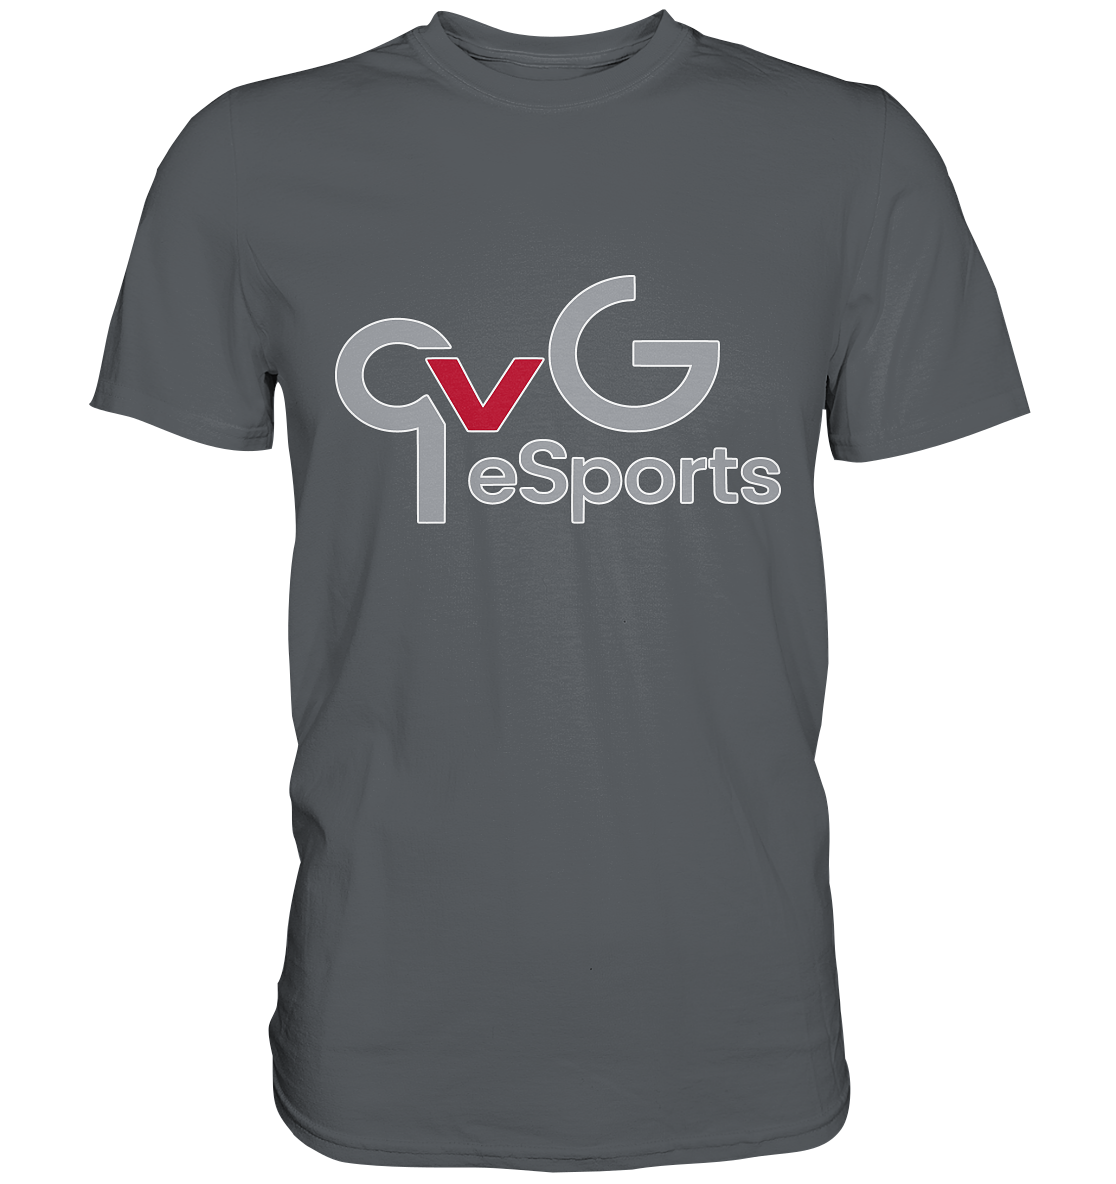 QVG ESPORTS - Basic Shirt